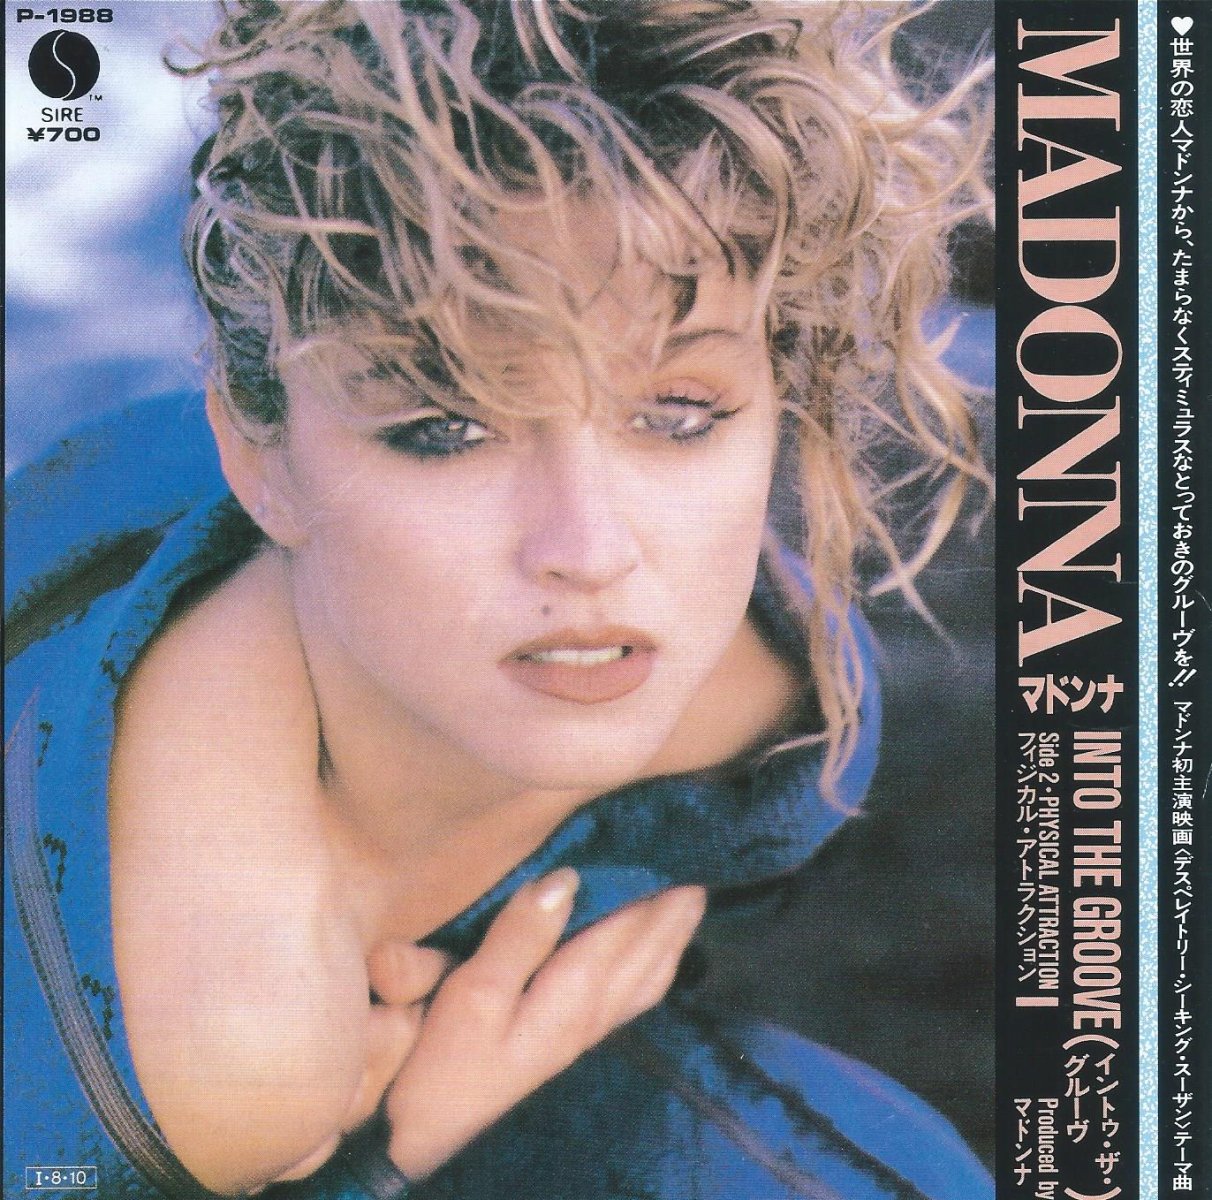 マドンナ Madonna Mix オフィシャル コロンビア盤 12” レコード 